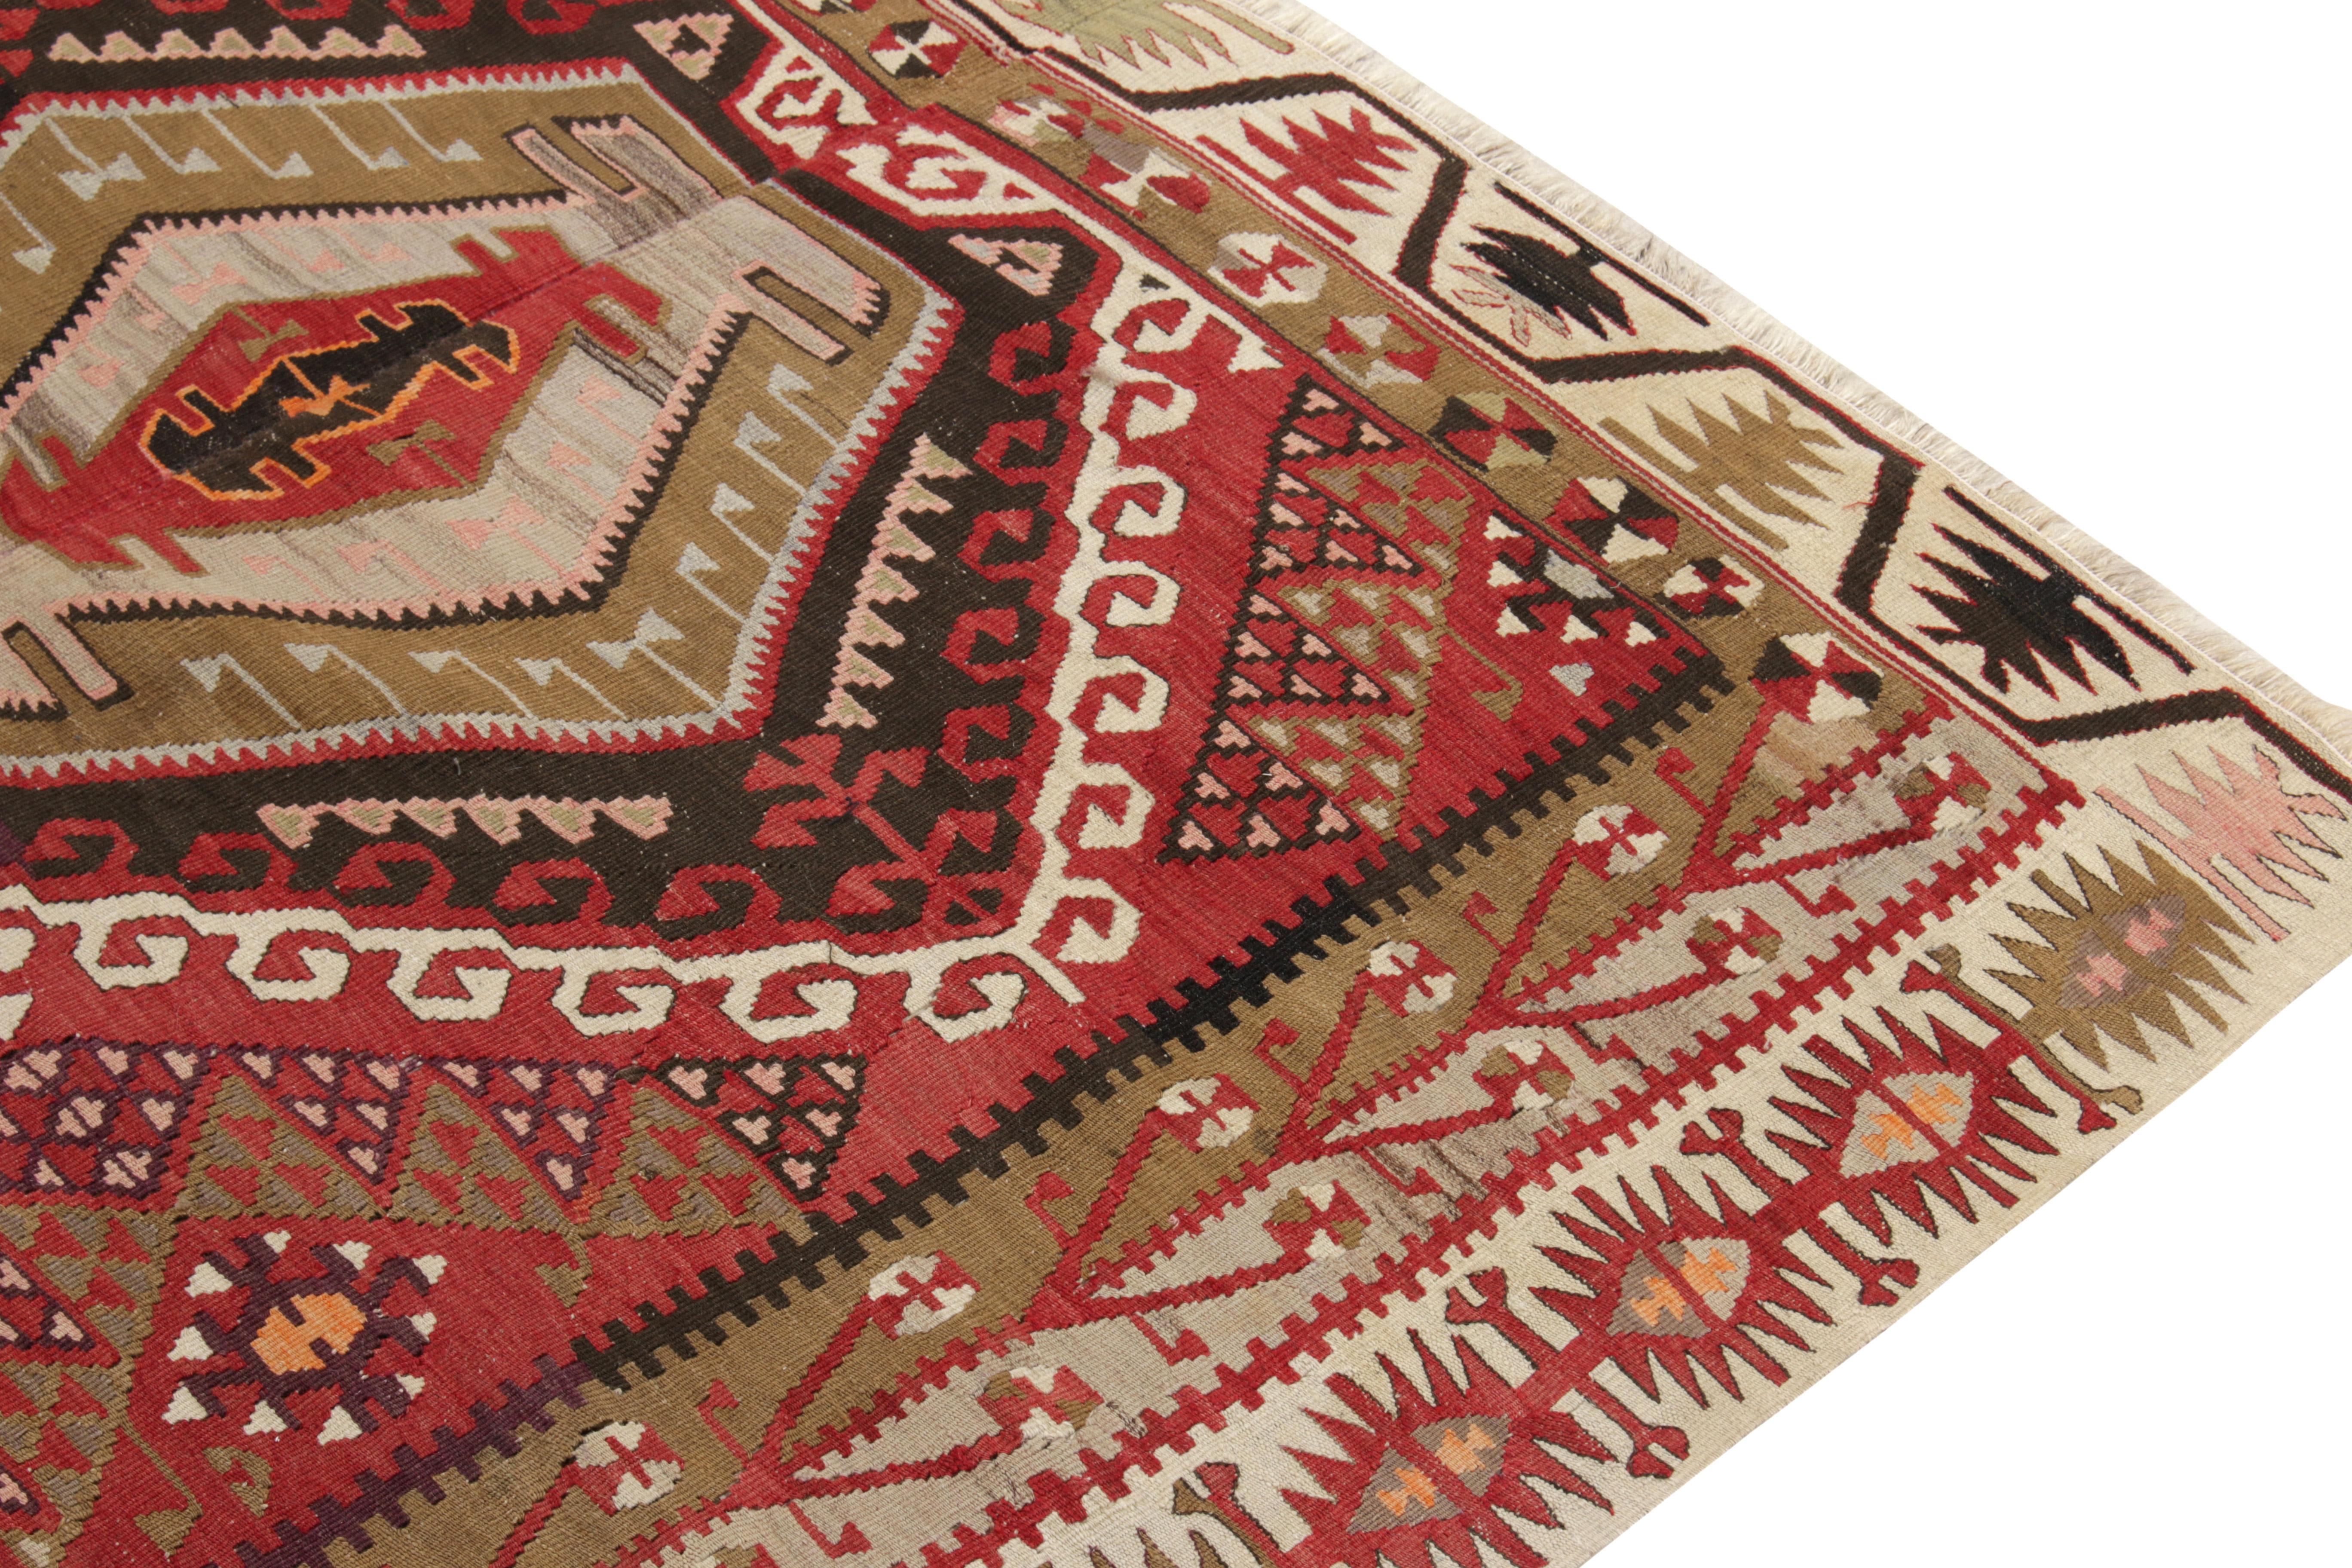 Turkish Vintage Kayseri Kilim Rug, Red, Beige-Brown Geometric Pattern by Rug & Kilim For Sale